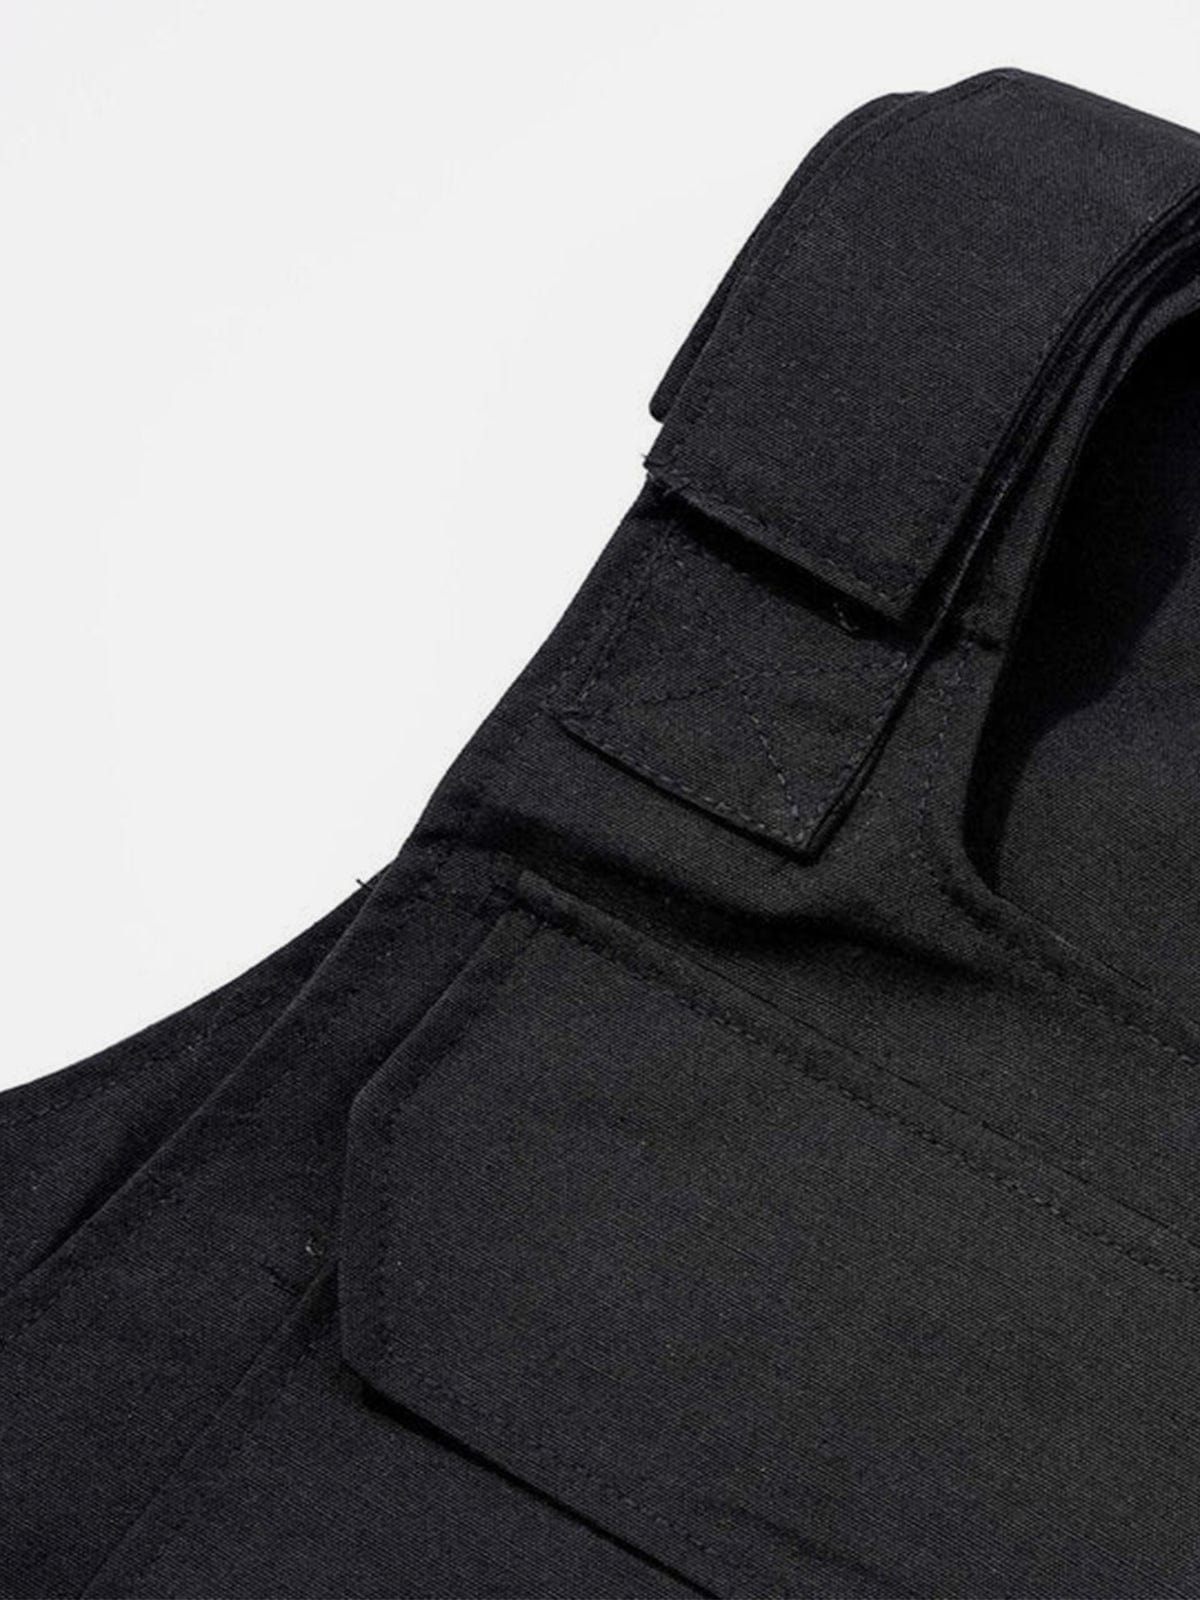 Techwear Velcro Print Pockets Vest Streetwear Brand Techwear Combat Tactical YUGEN THEORY